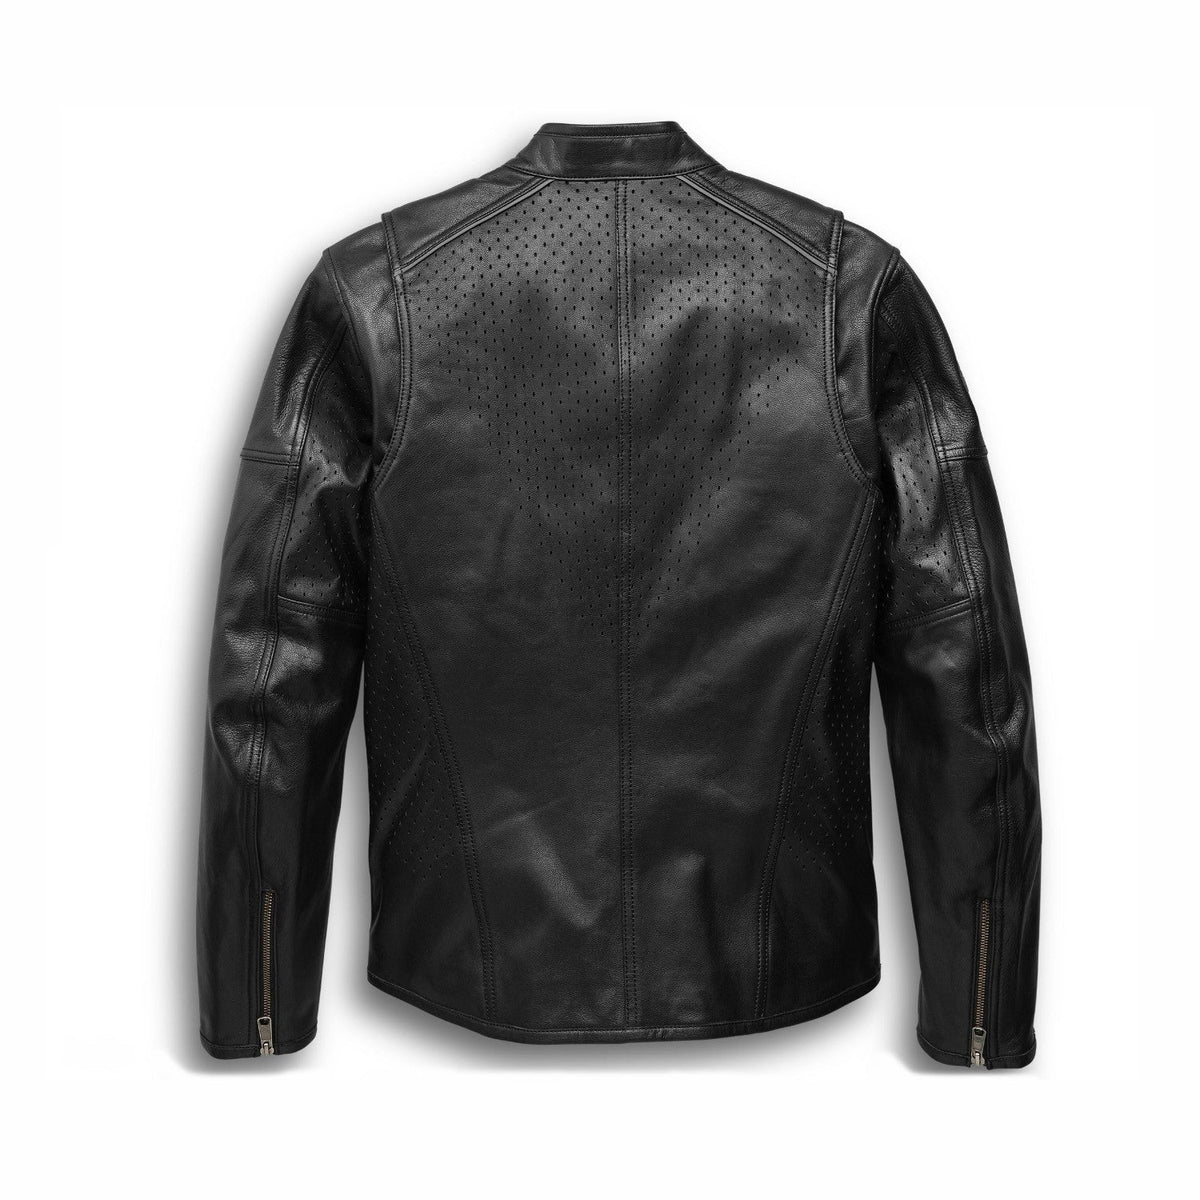 Harley Davidson Stylish Black Leather Jacket